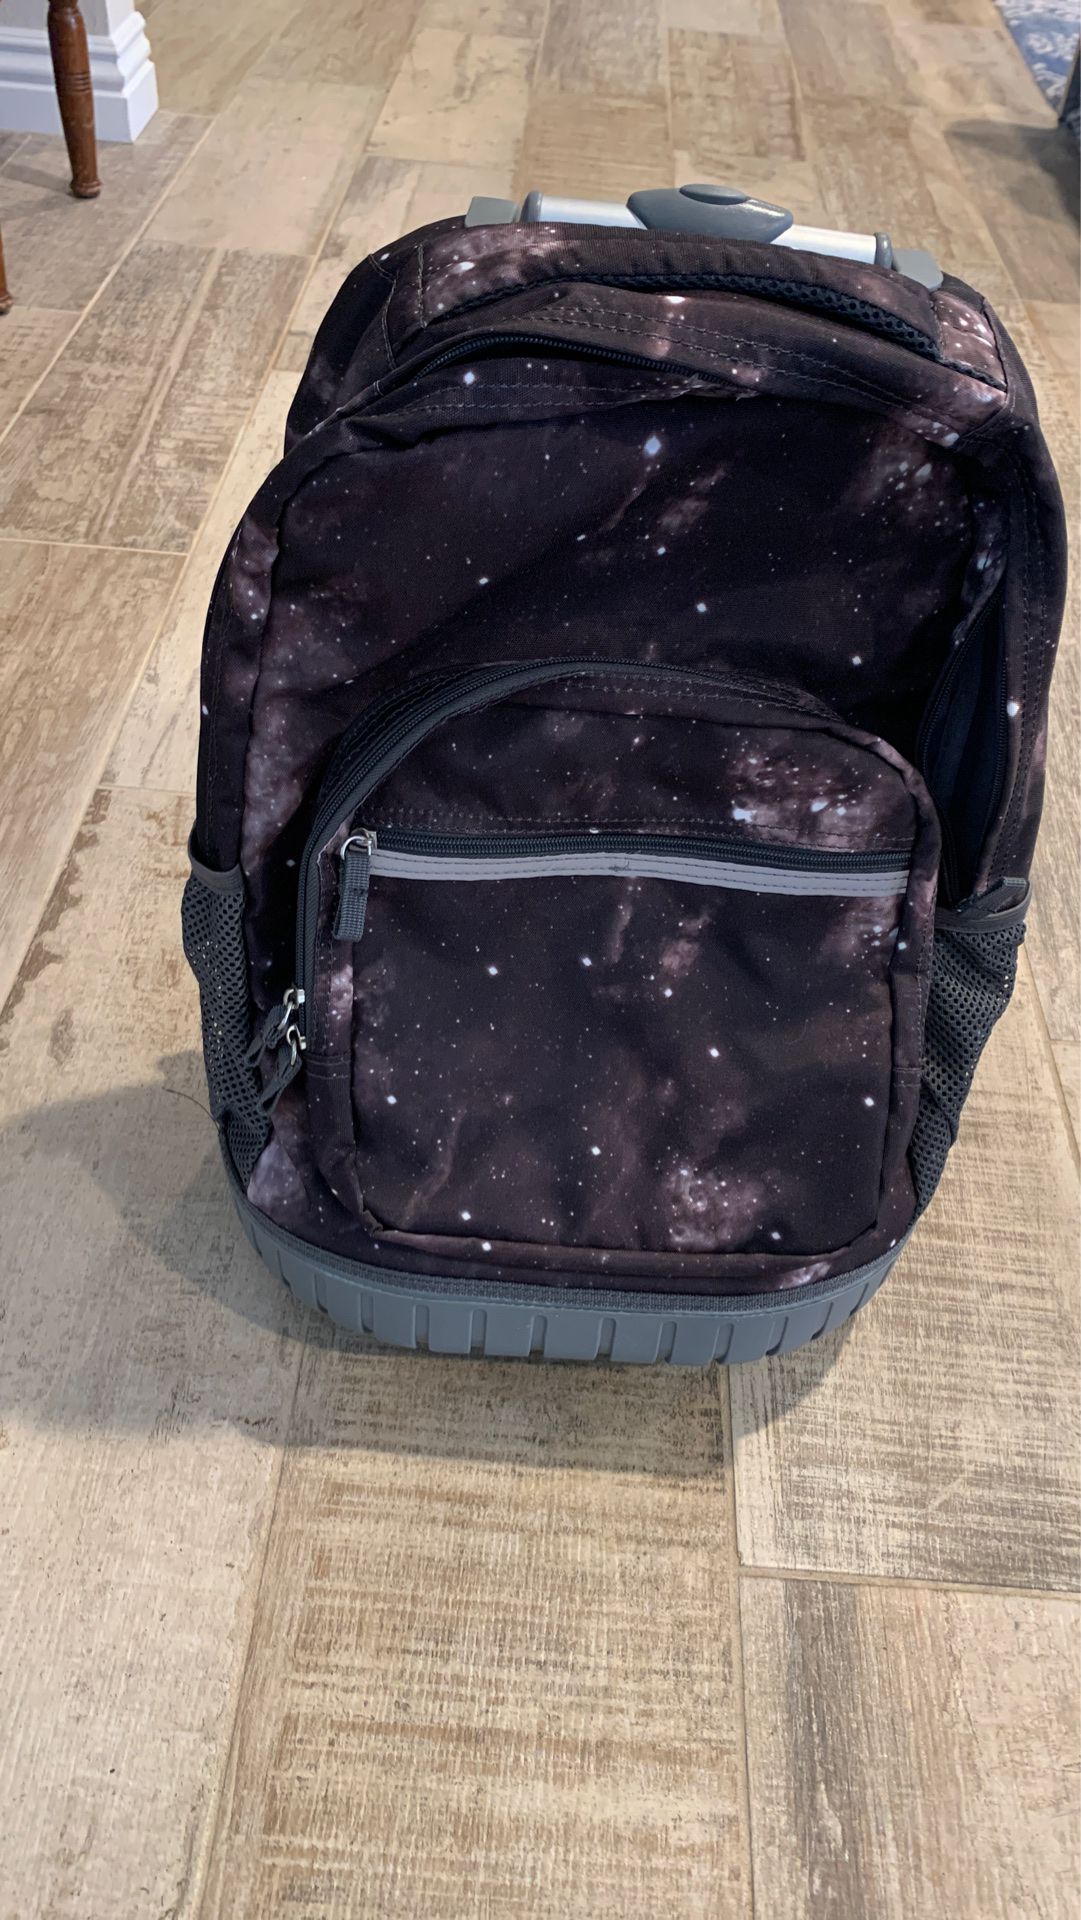 Brand new roller backpack